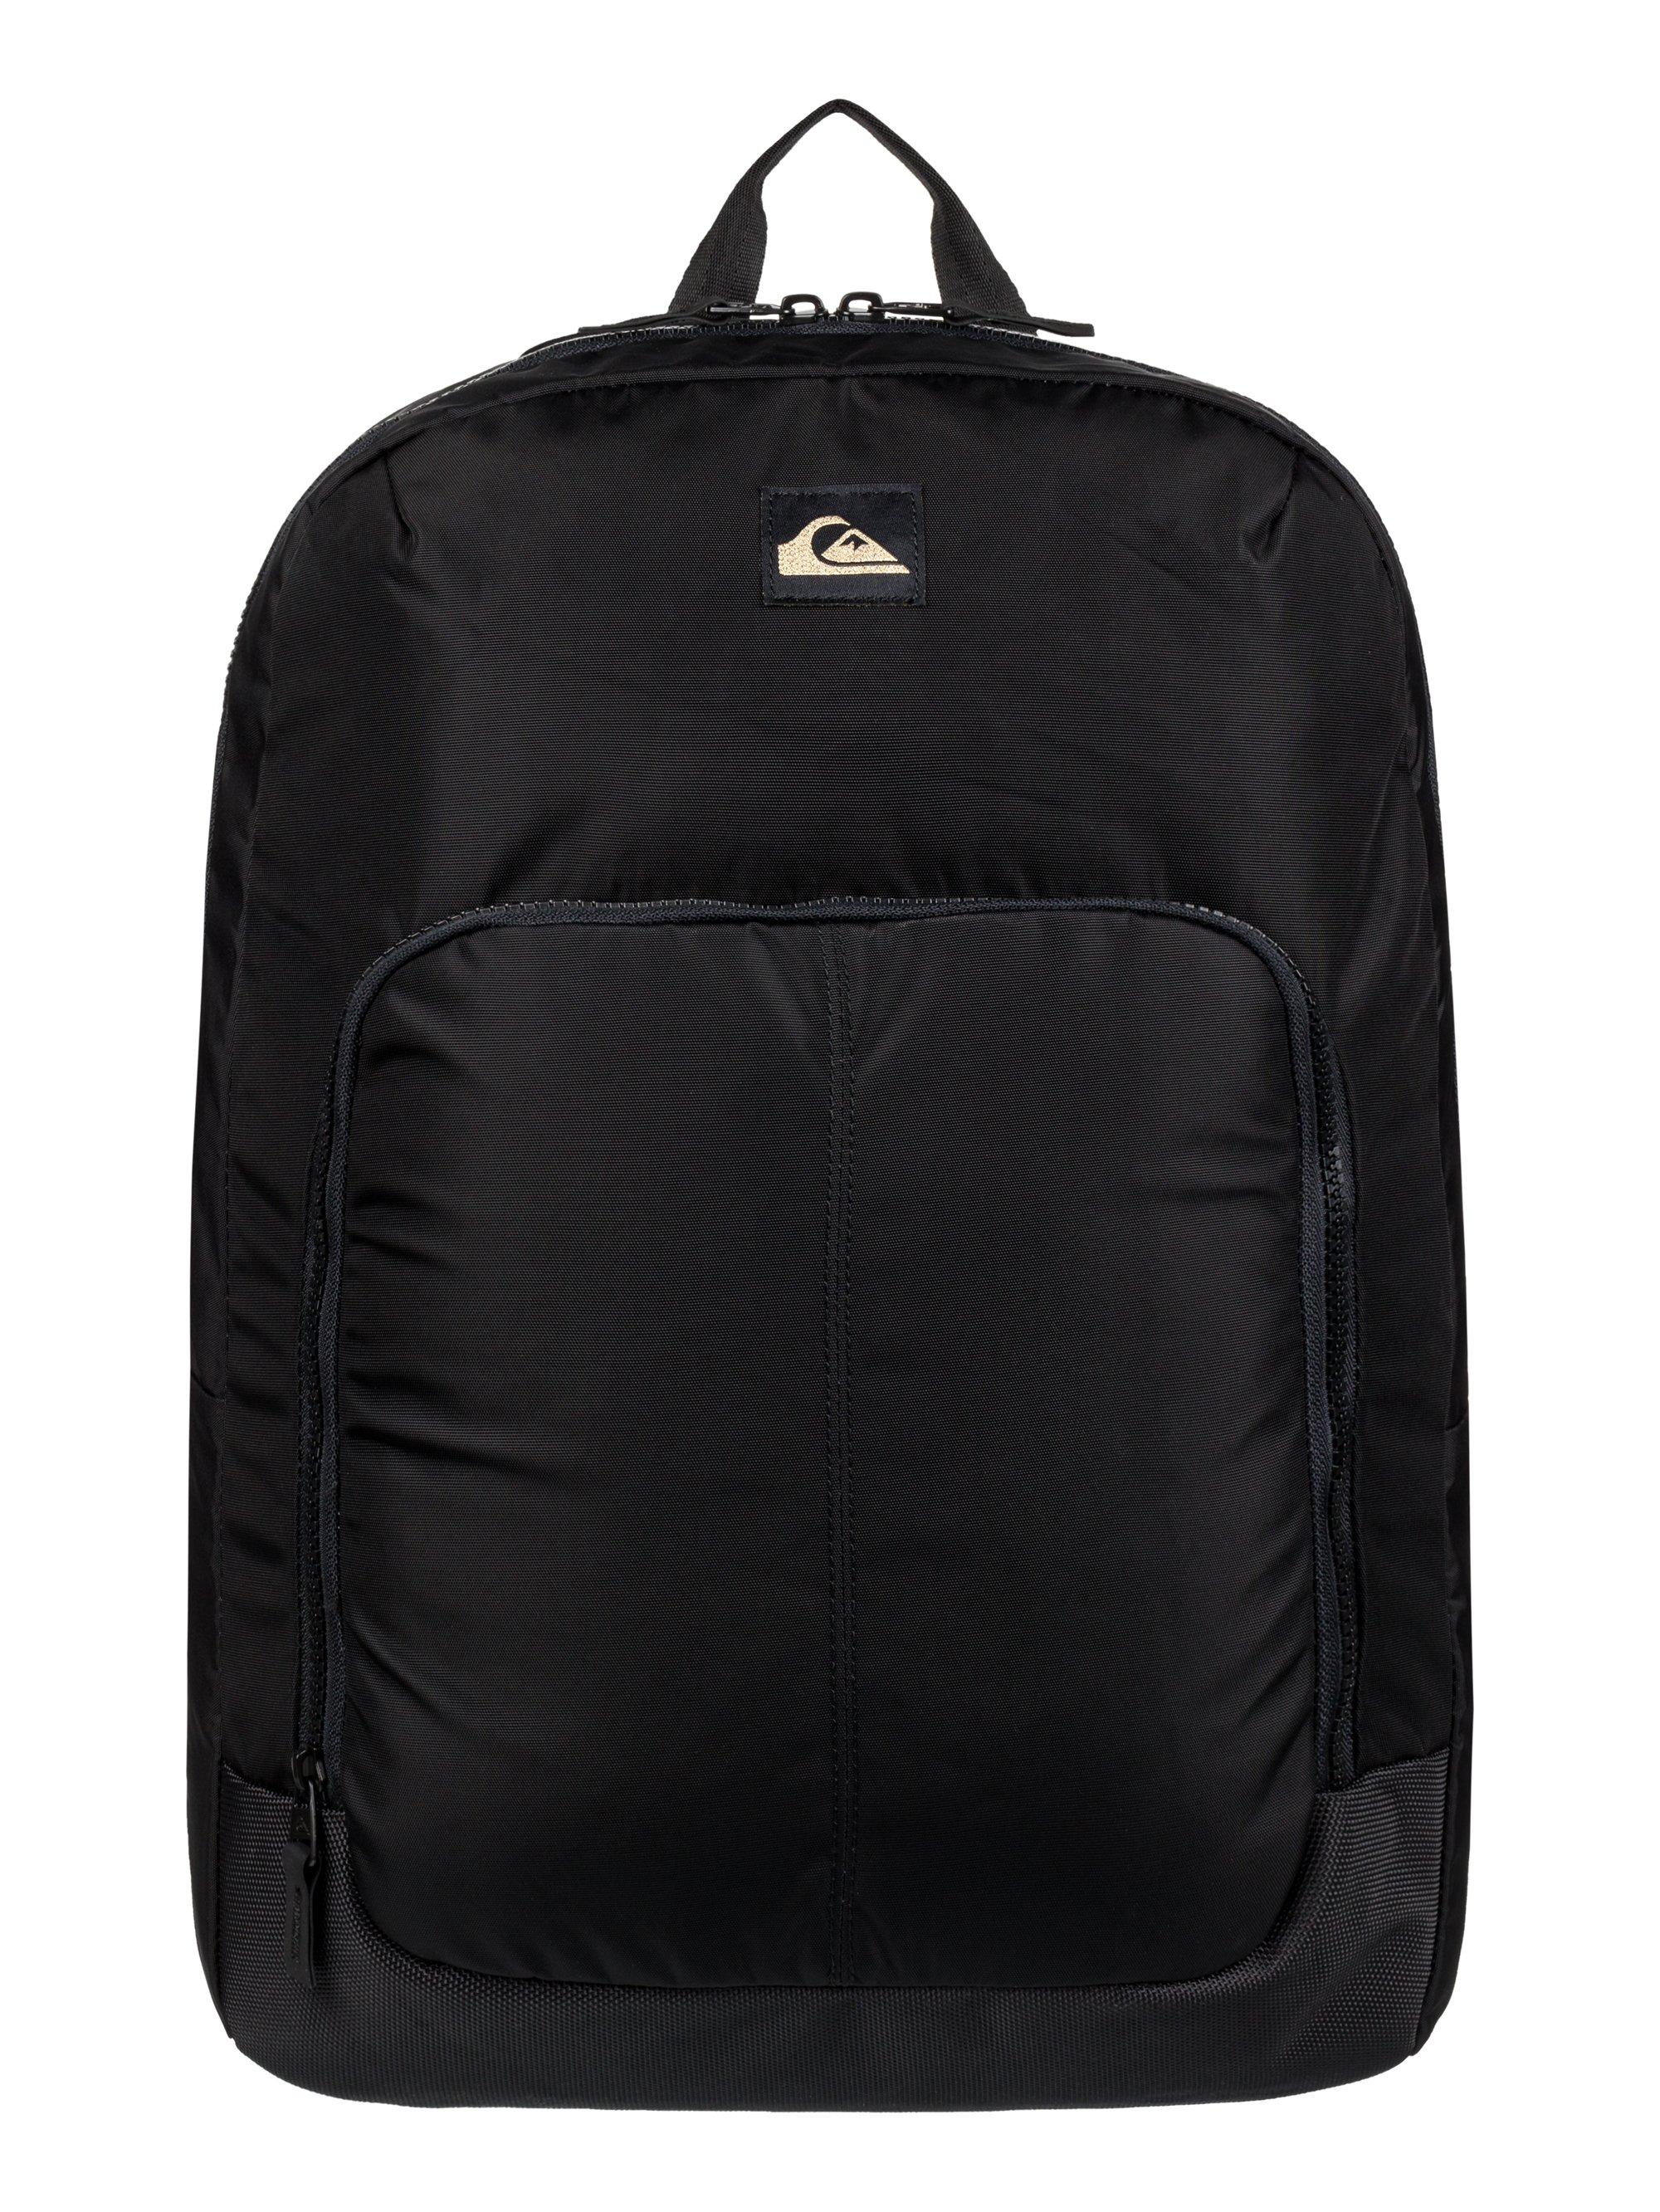 Quiksilver 50Y Backpack - 22 Liter Backpack